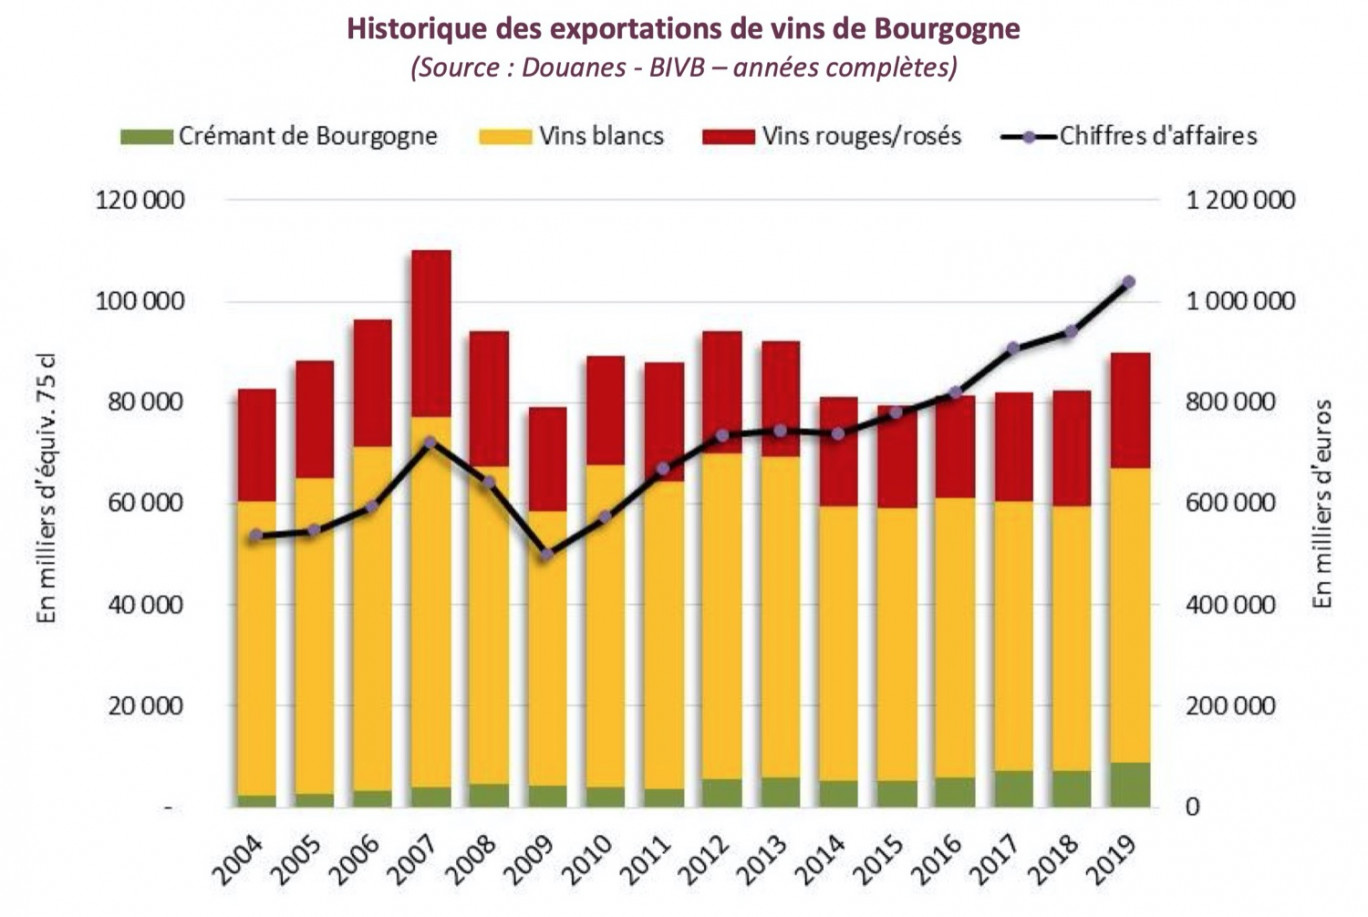 Crédits photo : BIVB
« Historique des exportations de vins de Bourgogne / Évolution des marchés d’export des vins de Bourgogne ».
